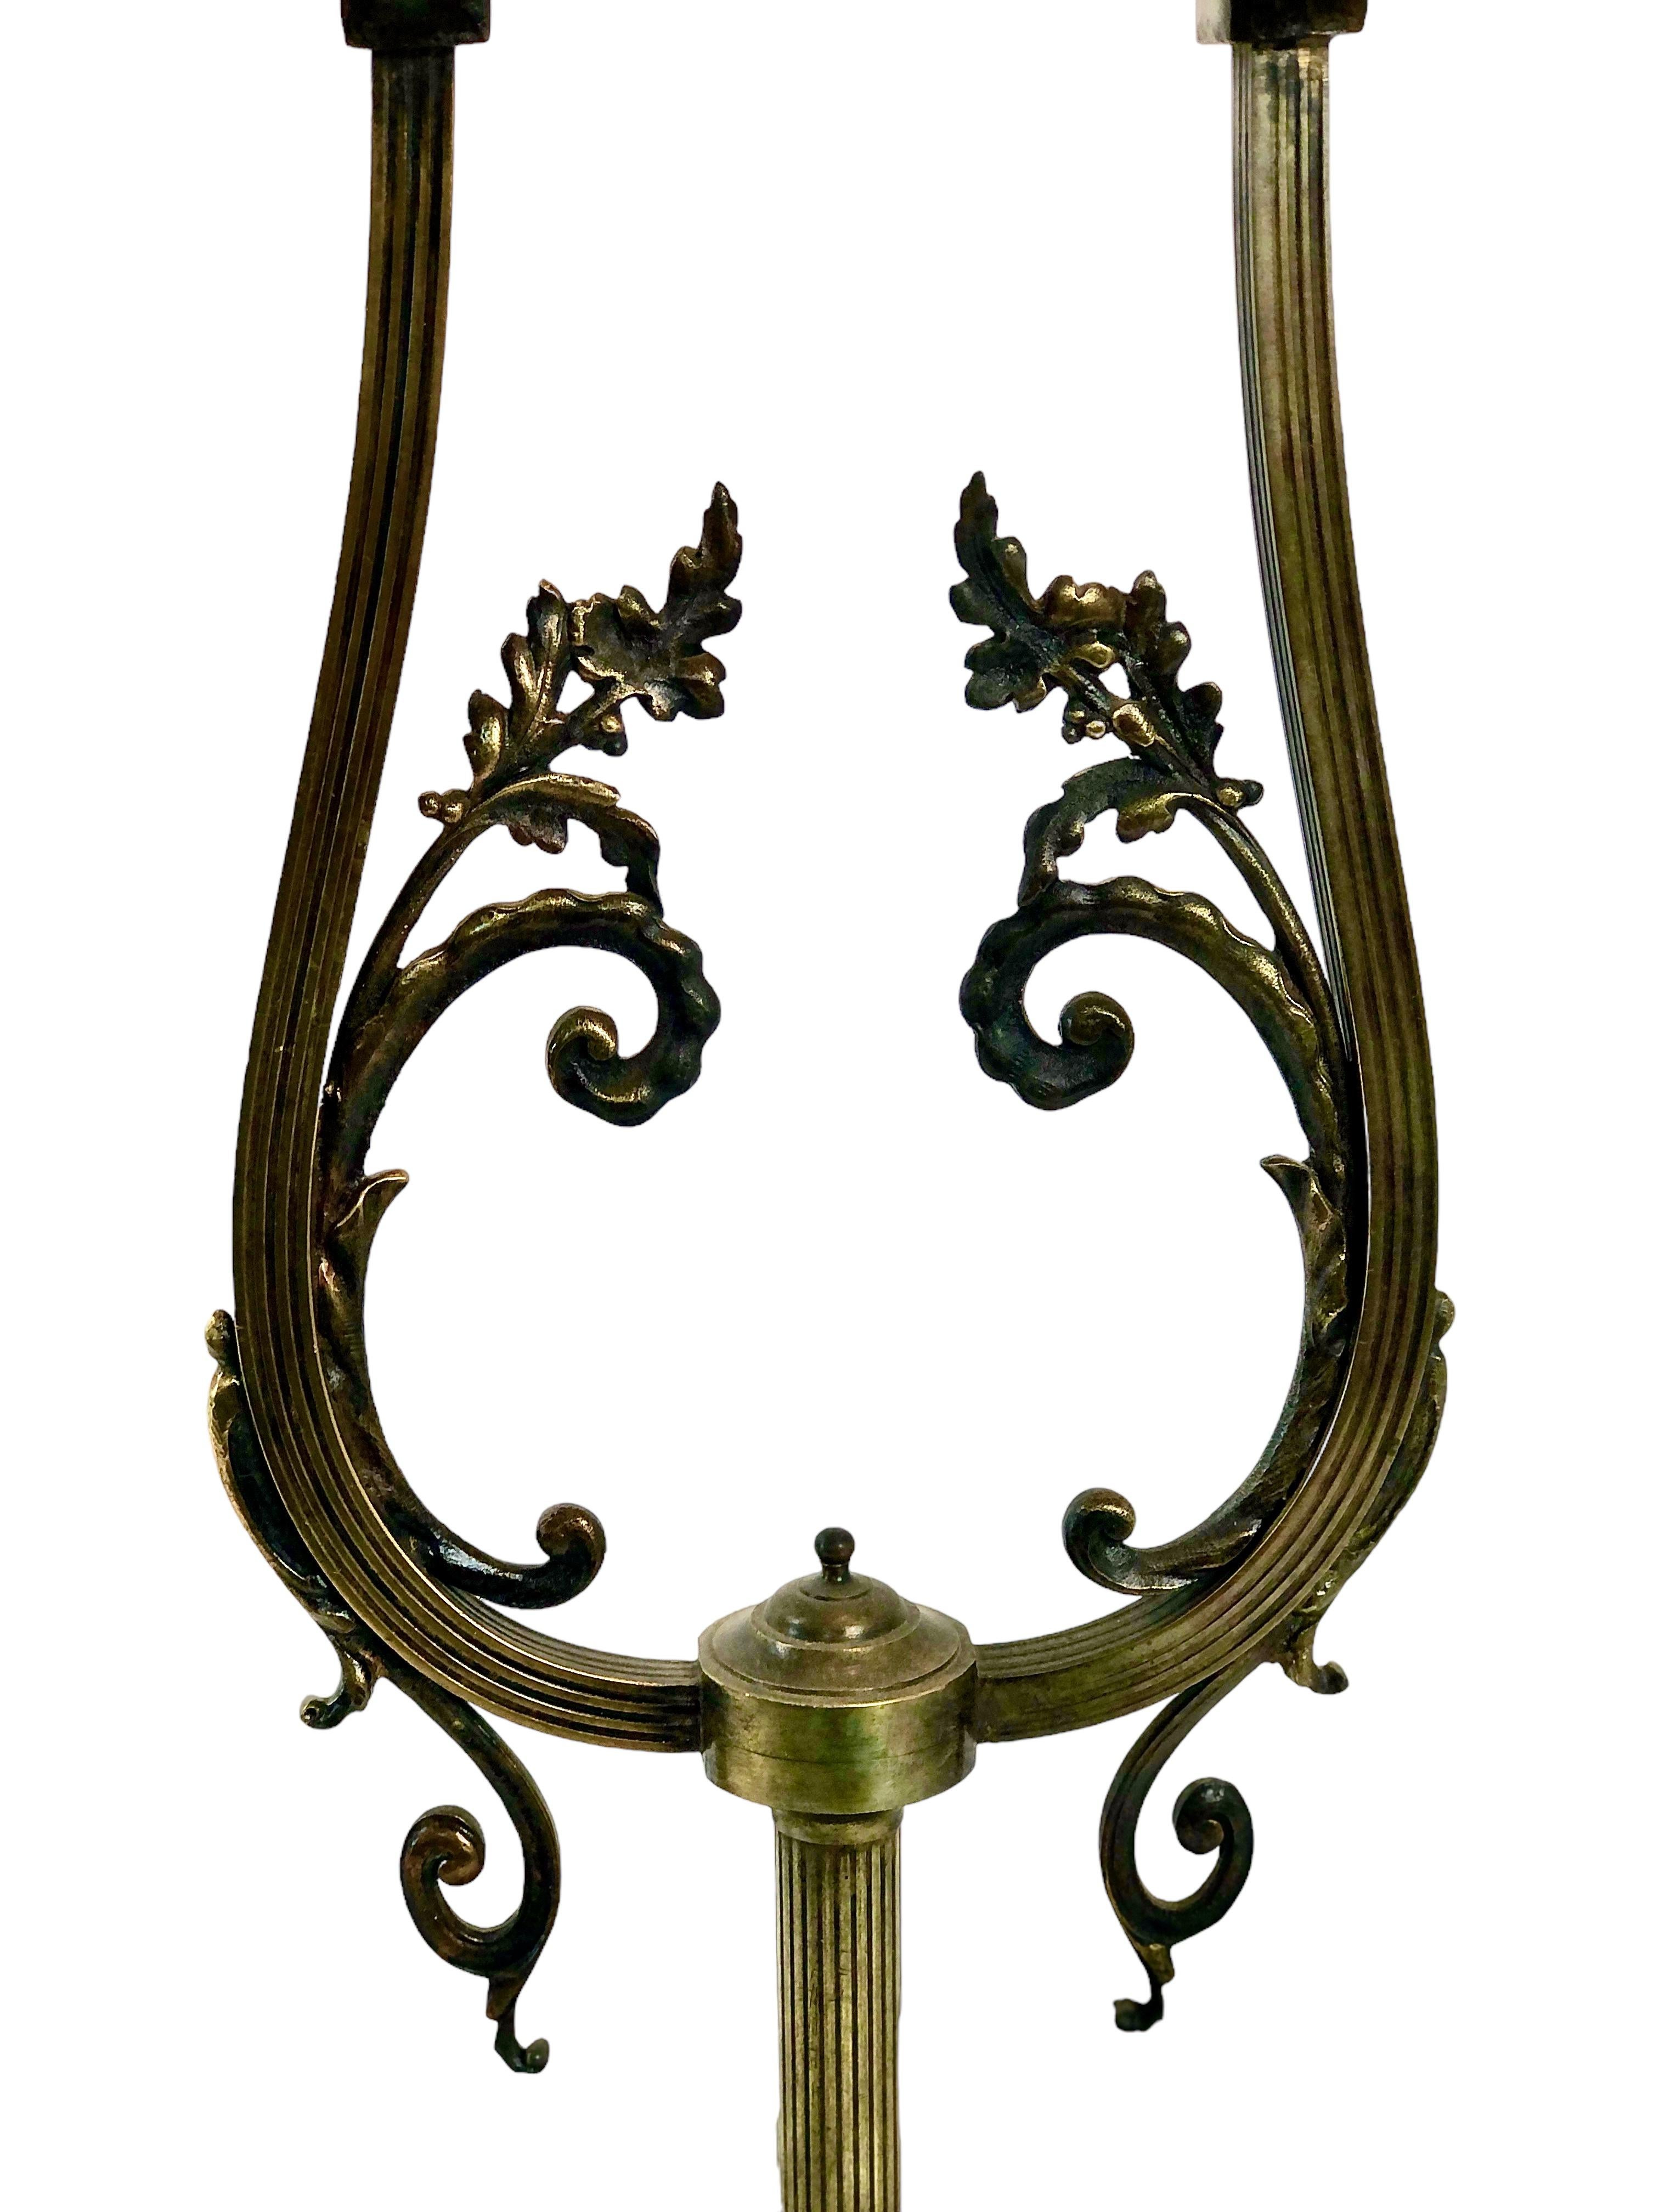 Lampe de table à deux bras en fer forgé et verre moulé dépoli de style Art déco français. Cette lampe accrocheuse mesure 85 cm de haut et peut donc tout aussi bien être posée sur le sol pour éclairer un coin sombre. Posés sur une lourde base en fer